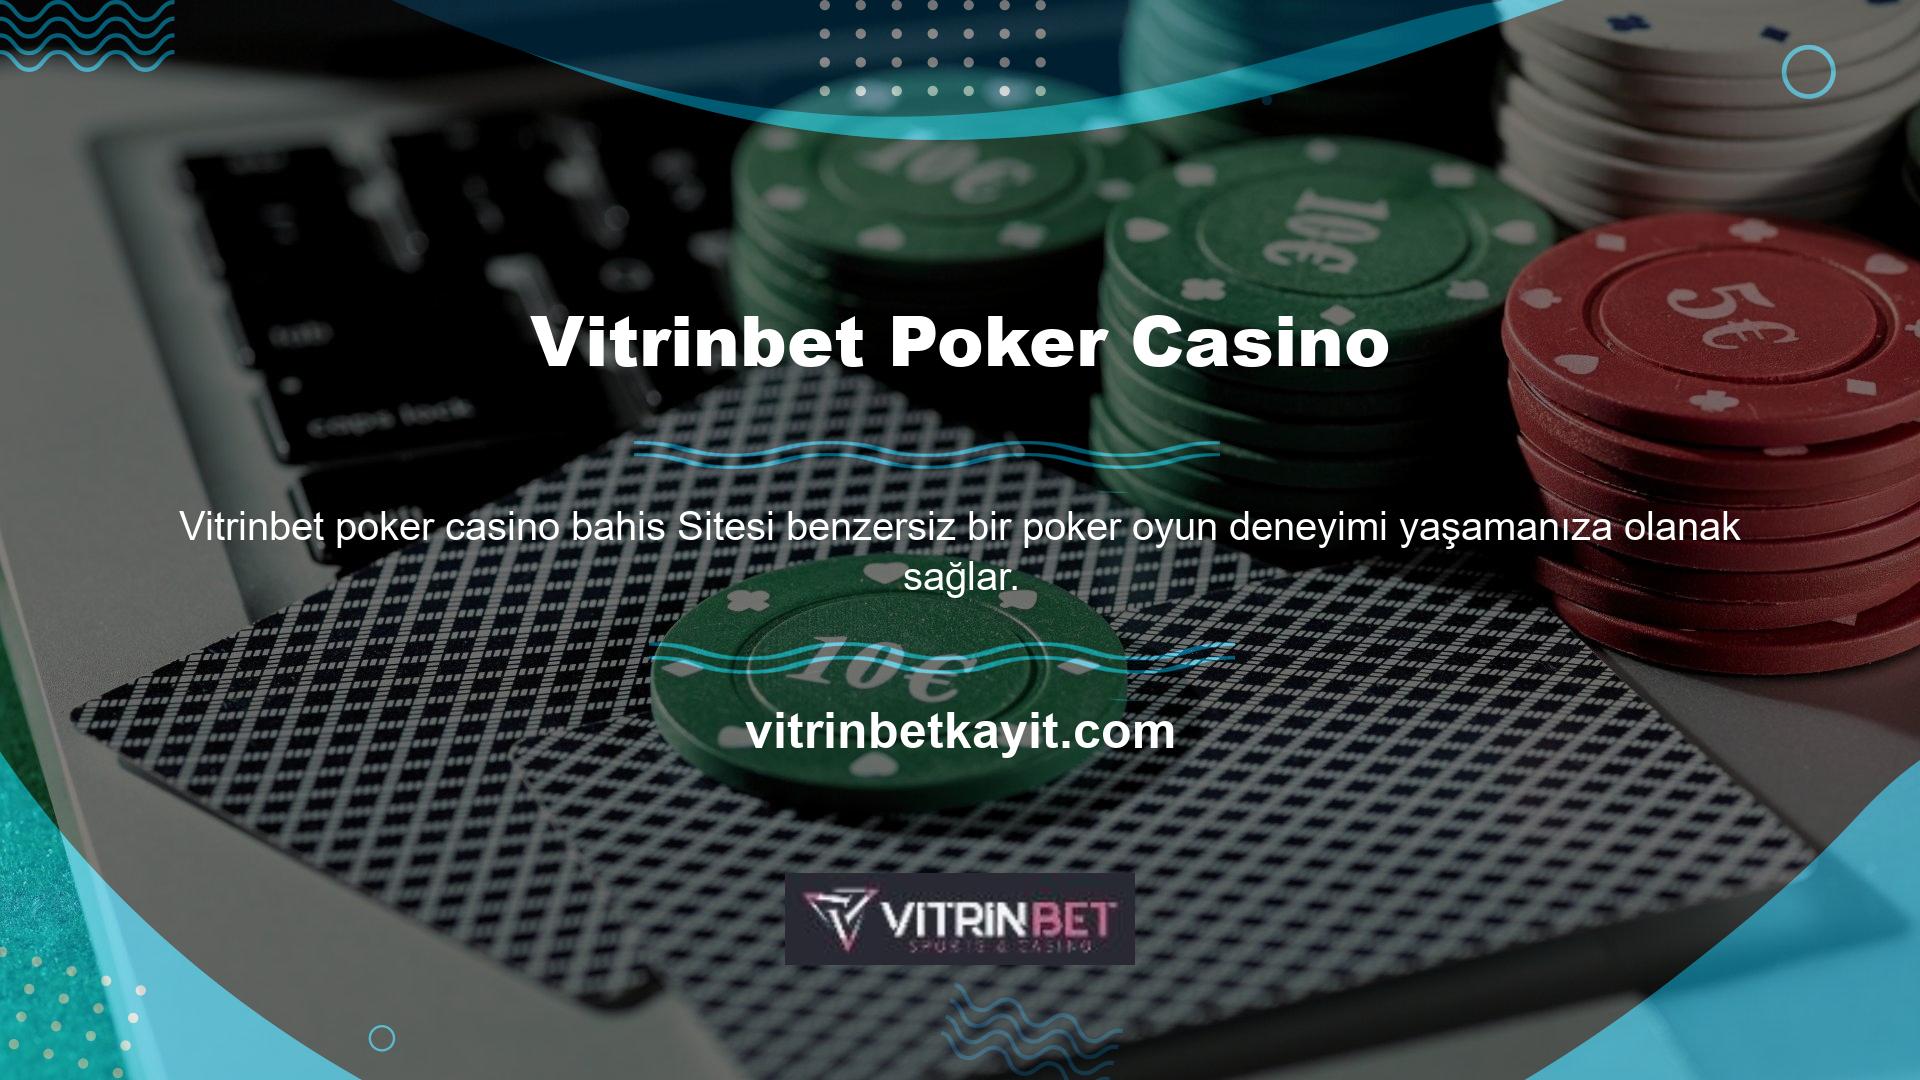 Dünyanın her yerinden oyuncularla uluslararası platformlarda poker oynamak için üyelik sonrasında "Casino Oyunları" bölümünden poker seçeneğini seçebilirsiniz